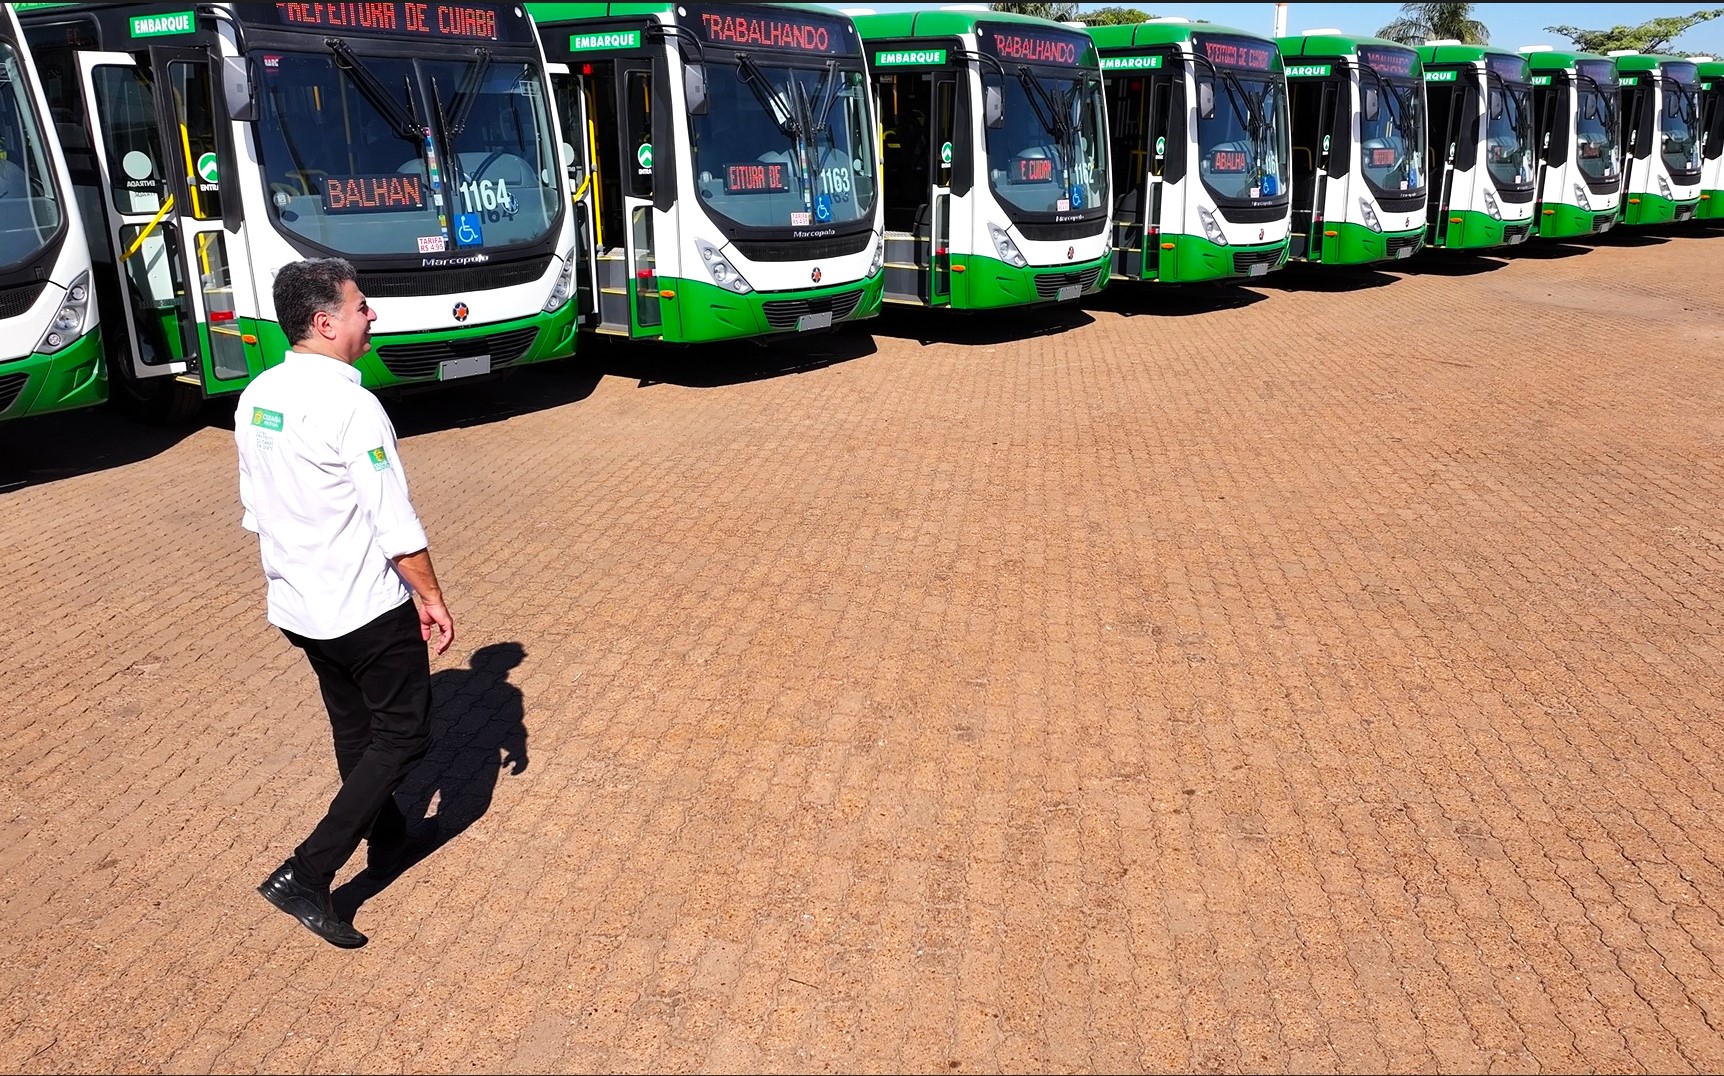 Prefeitura de Cuiabá confirma entrega de mais 18 ônibus com ar-condicionado